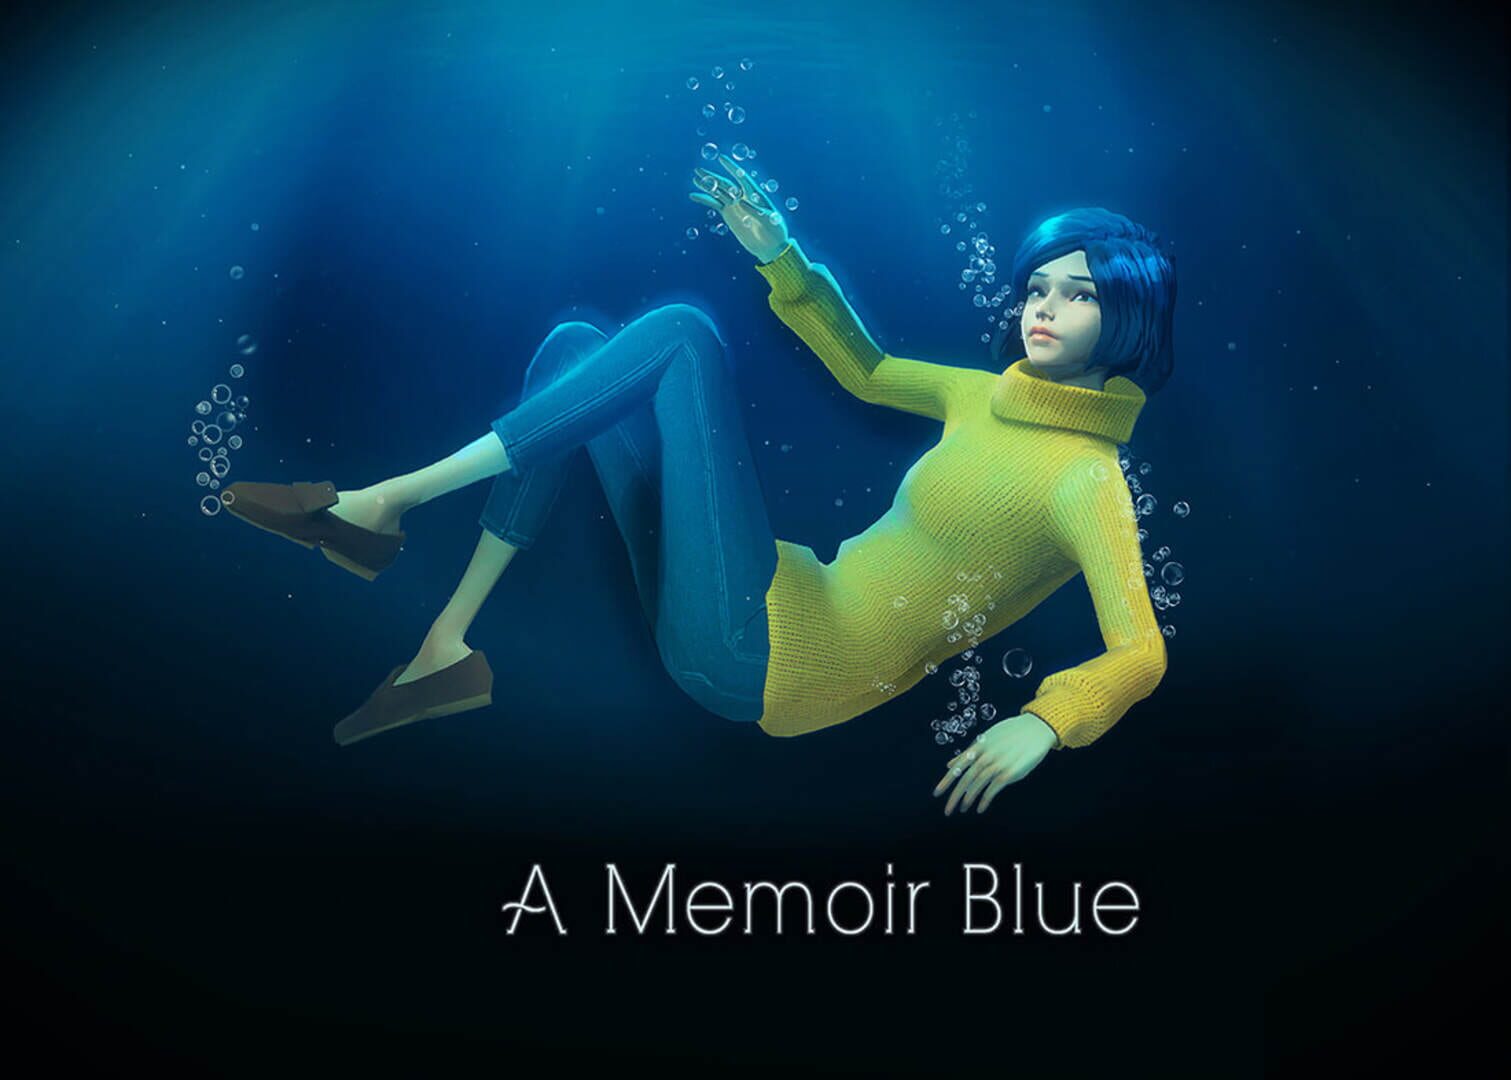 A Memoir Blue artwork